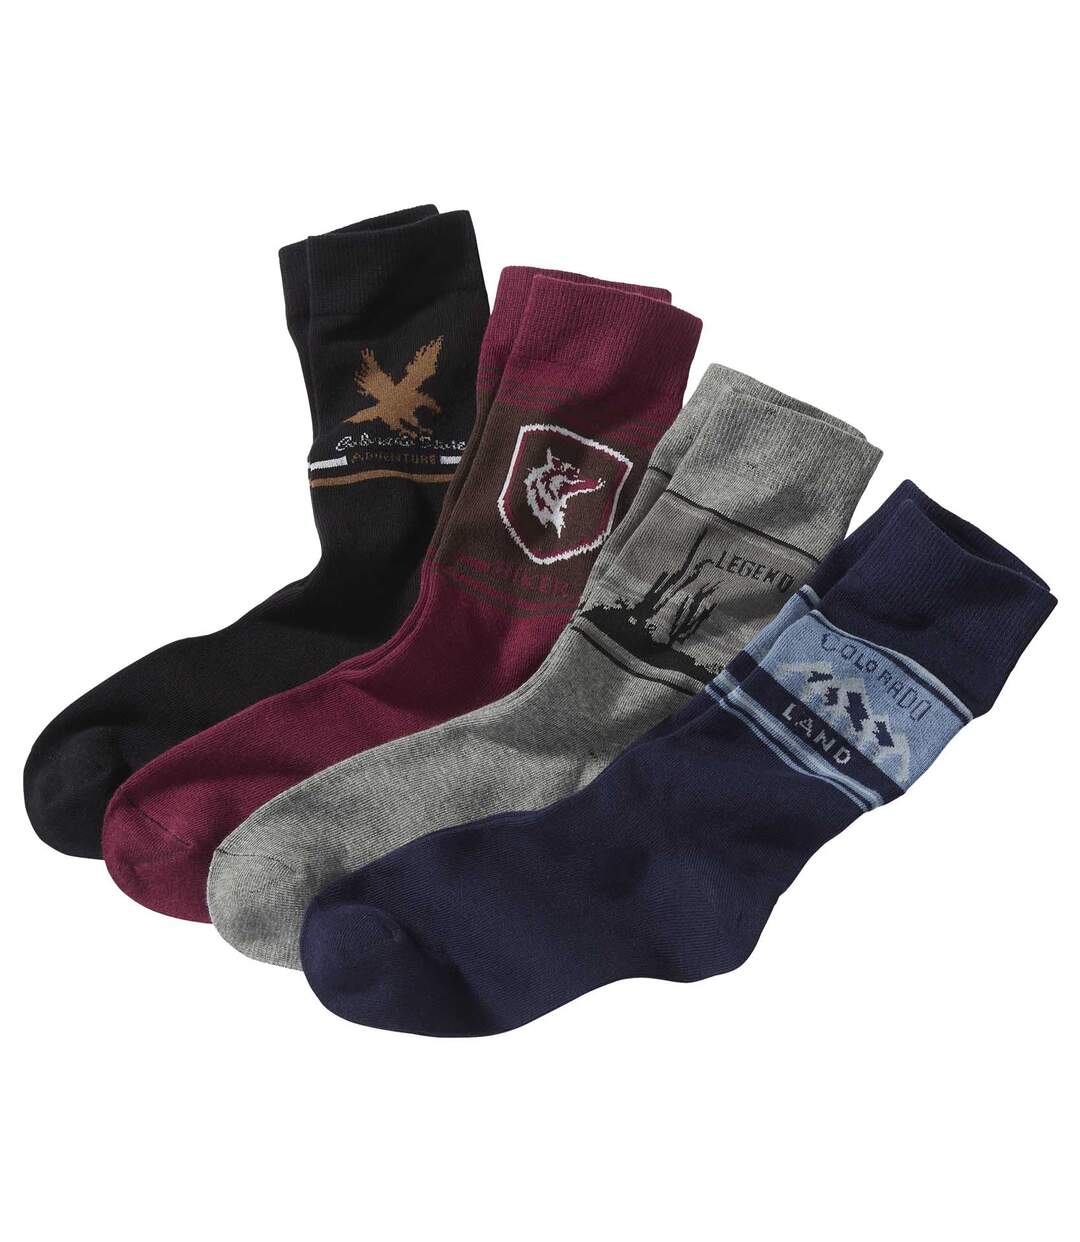 Pack of 4 Men's Pairs of Patterned Socks - Black Burgundy Navy Grey Atlas For Men